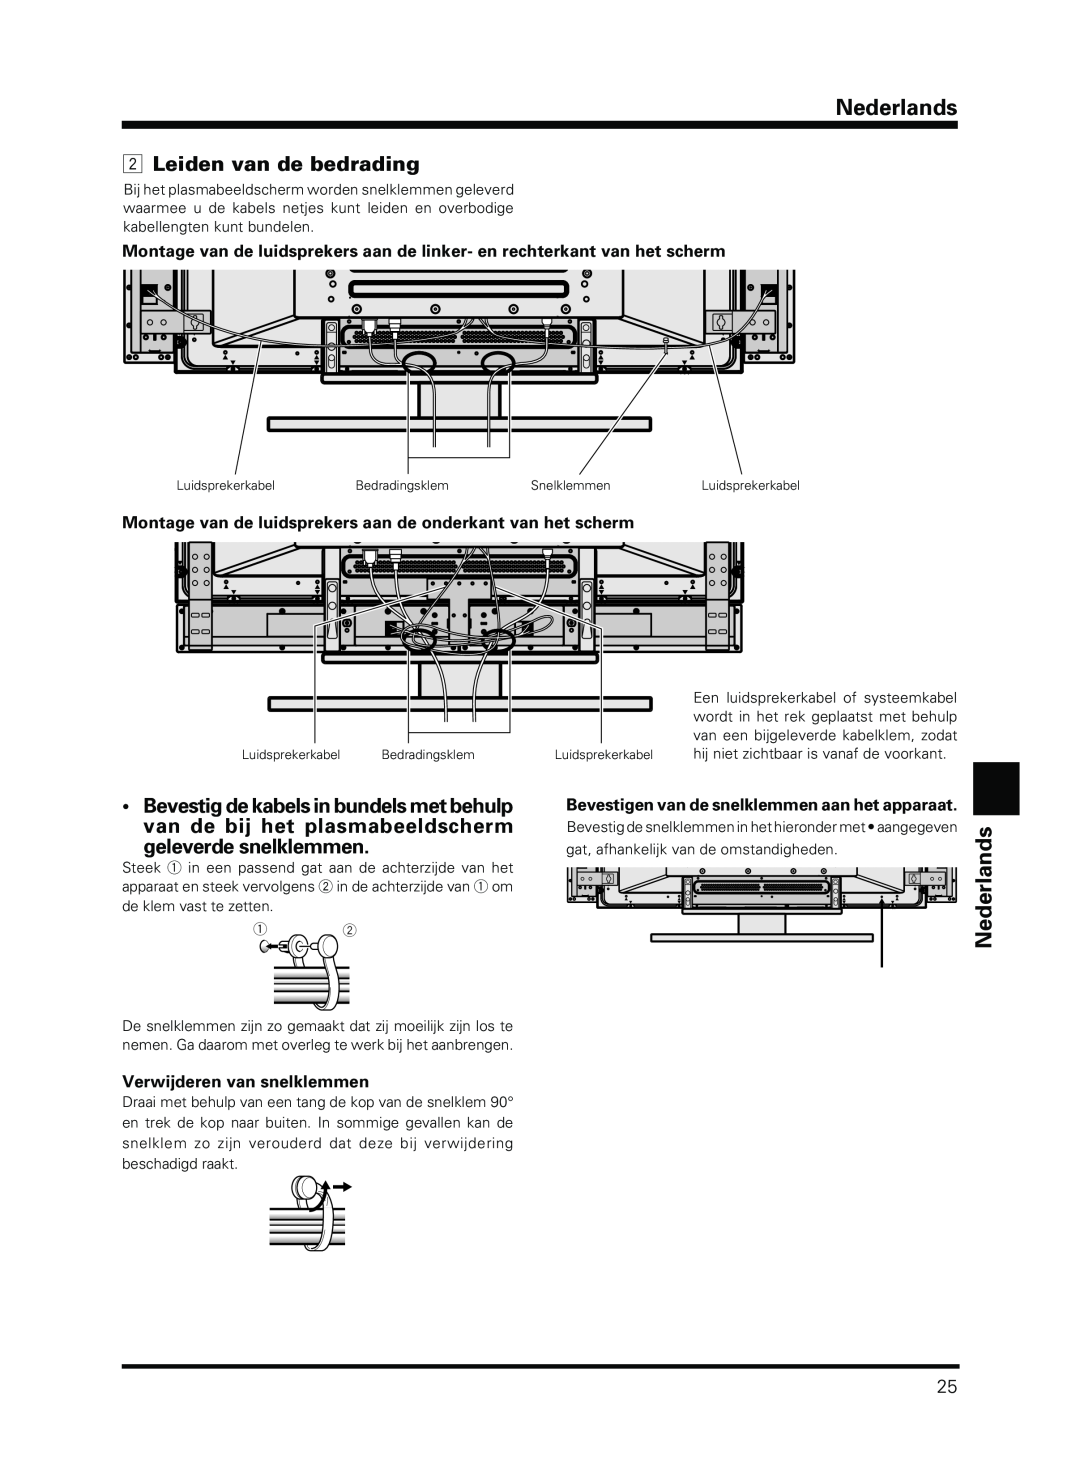 Pioneer PDP-S13-LR manual Leiden van de bedrading, geleverde snelklemmen, Verwijderen van snelklemmen, Nederlands 